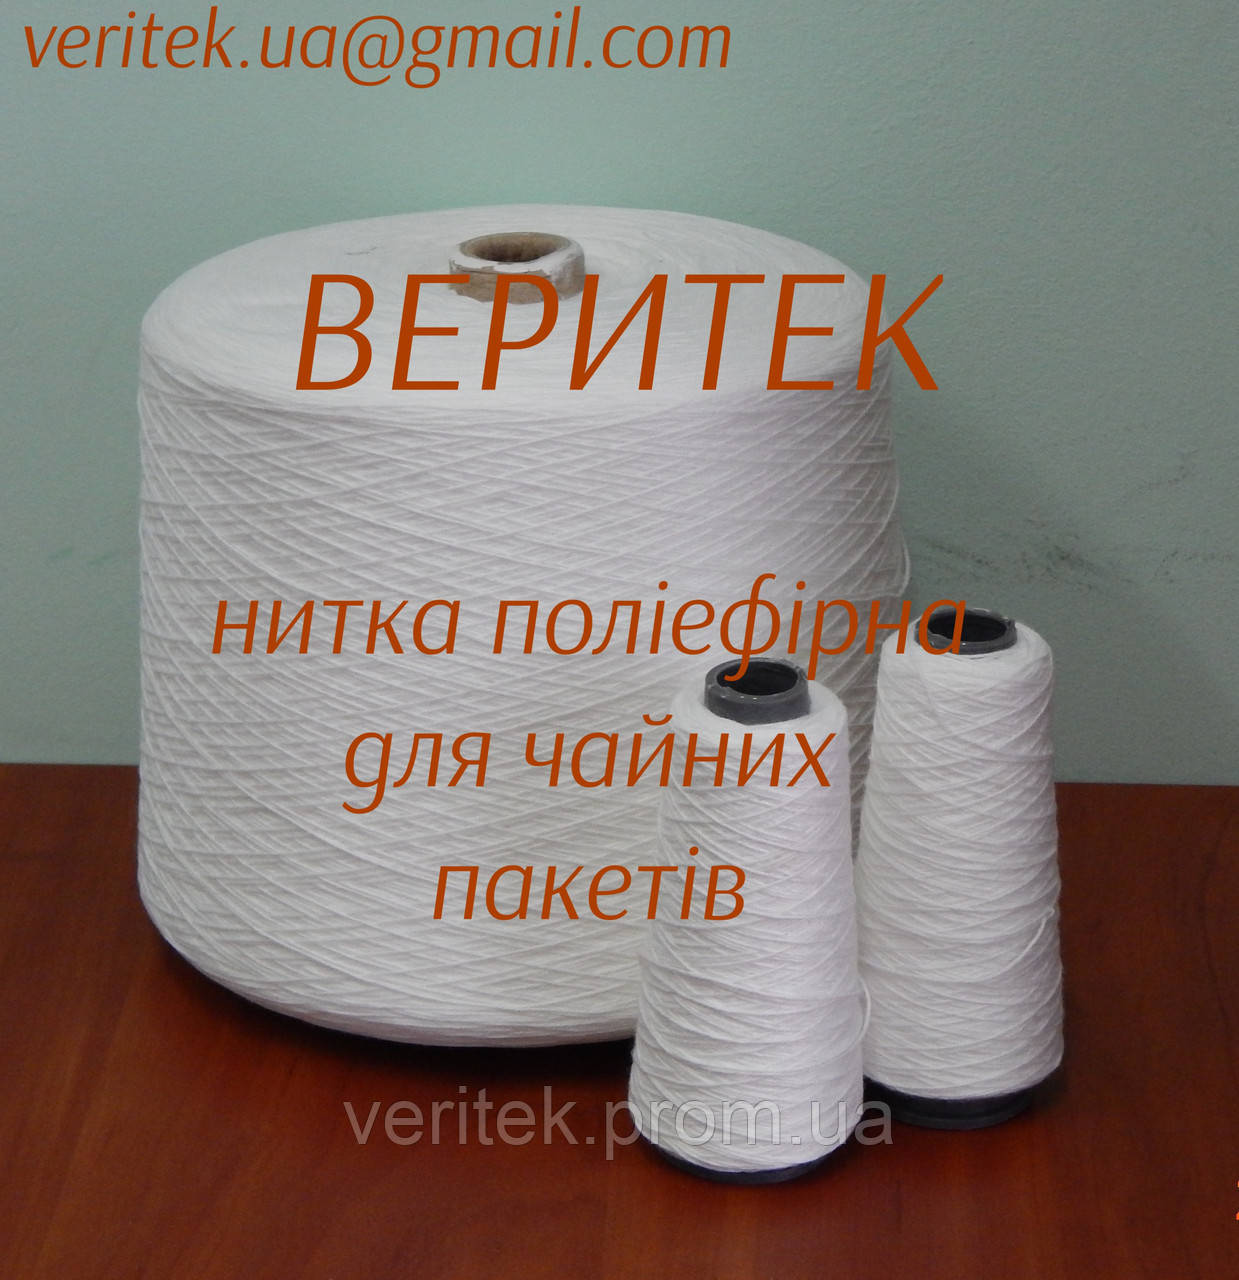 Чайна нитка поліефірна  (доступна під замовлення на сайті veritek.prom.ua або за тел.0675721597)